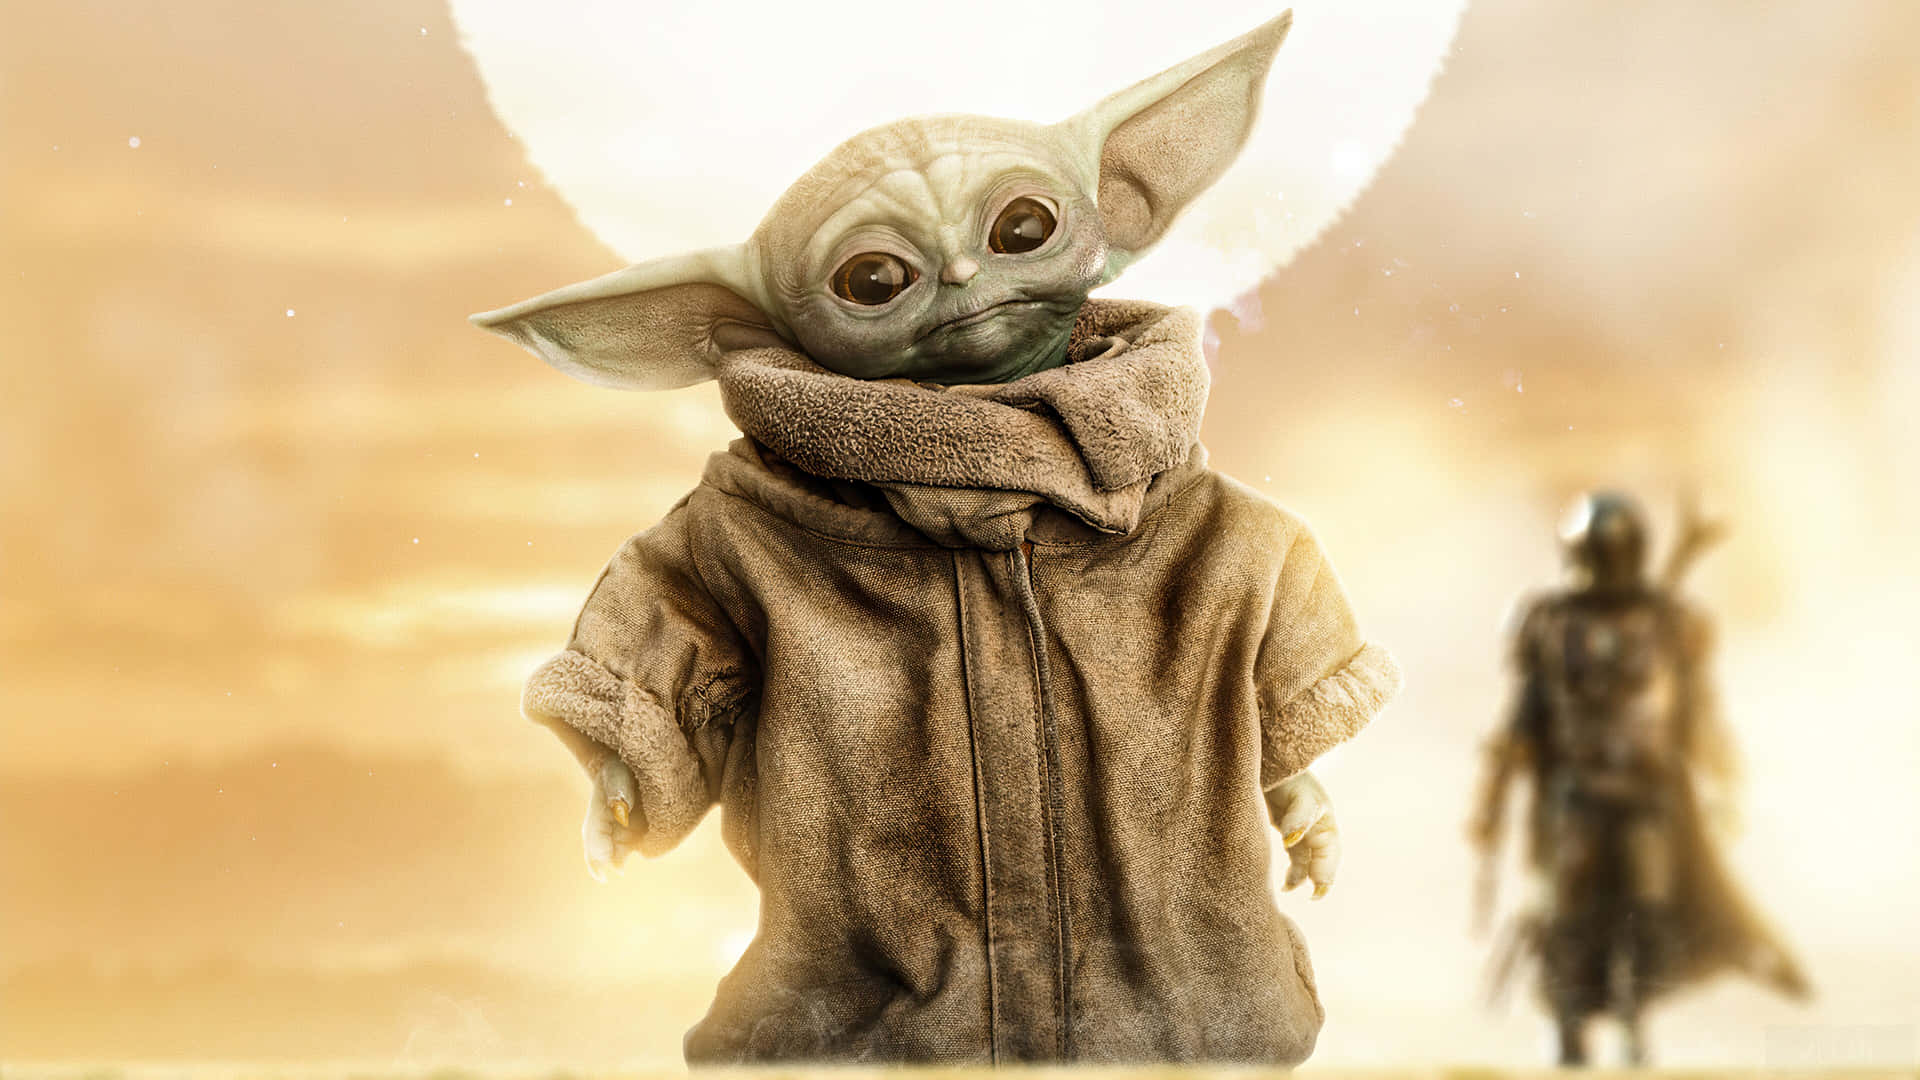 Baby Yoda Aesthetic In The Desert Wallpaper